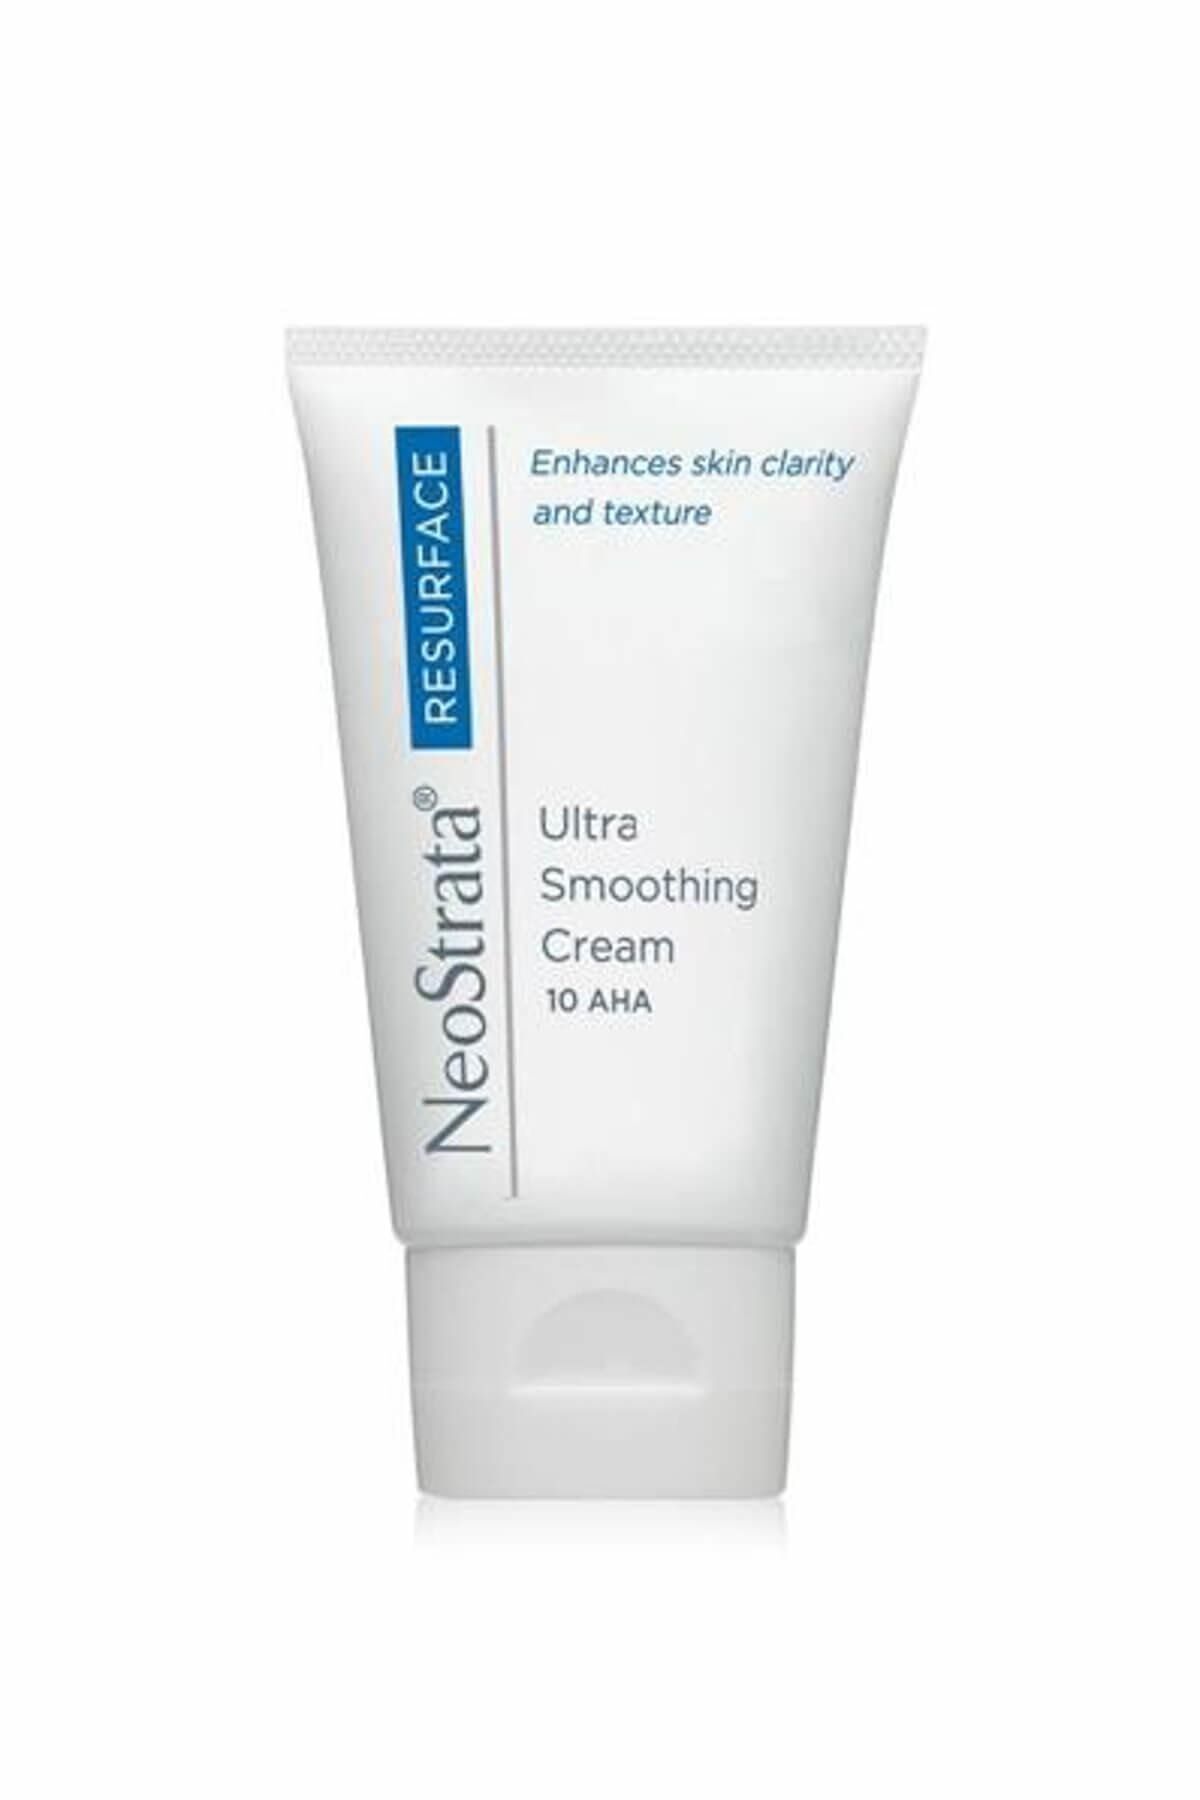 NeoStrata İnce Çizgi Görünümü Düzeltmeye Yardımcı Krem - Ultra Smoothing Cream 40 g